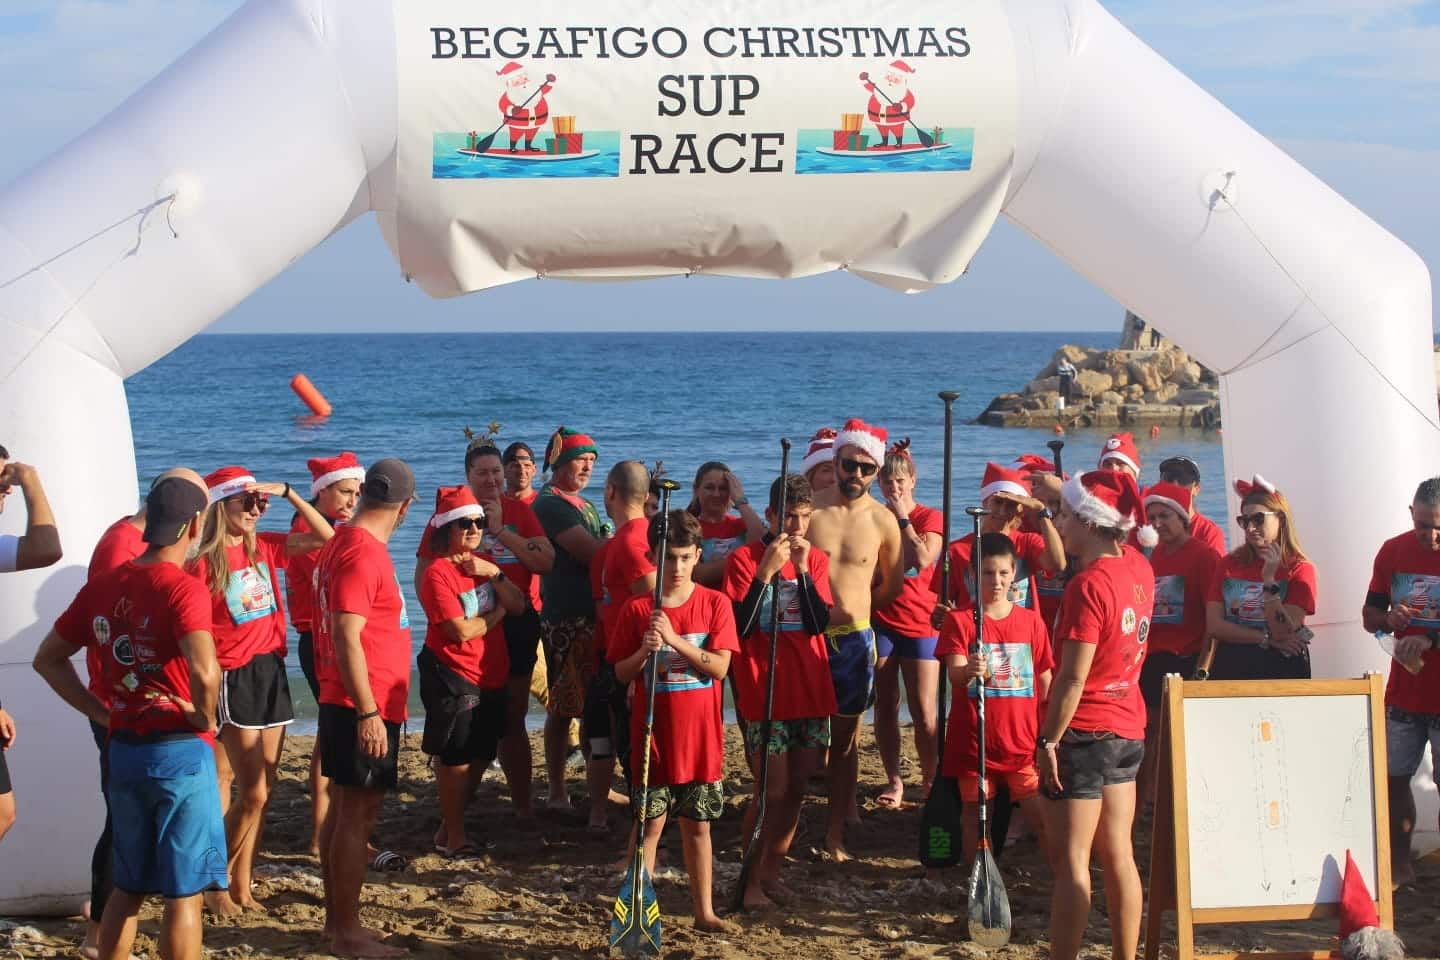 412125638 10161302692423216 2245637824052868656 n Christmas SUPer event, exclusive, 'Begafigo'